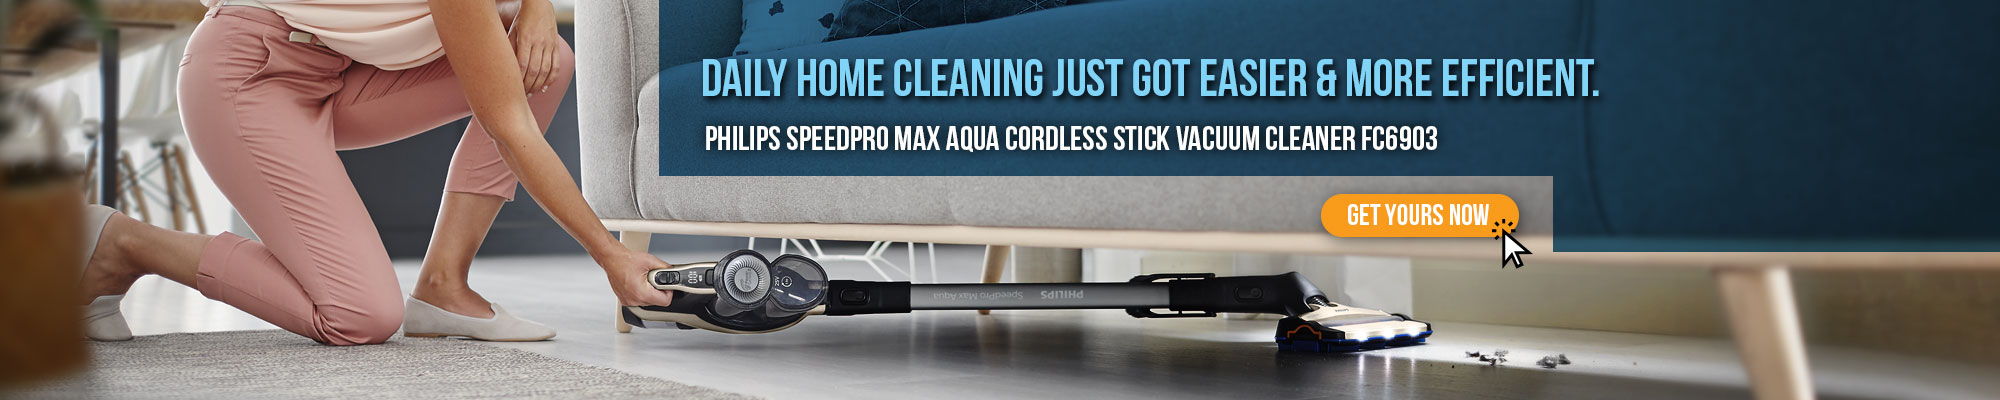 Philips SpeedPro Max Aqua Cordless Stick Vacuum Cleaner FC6903